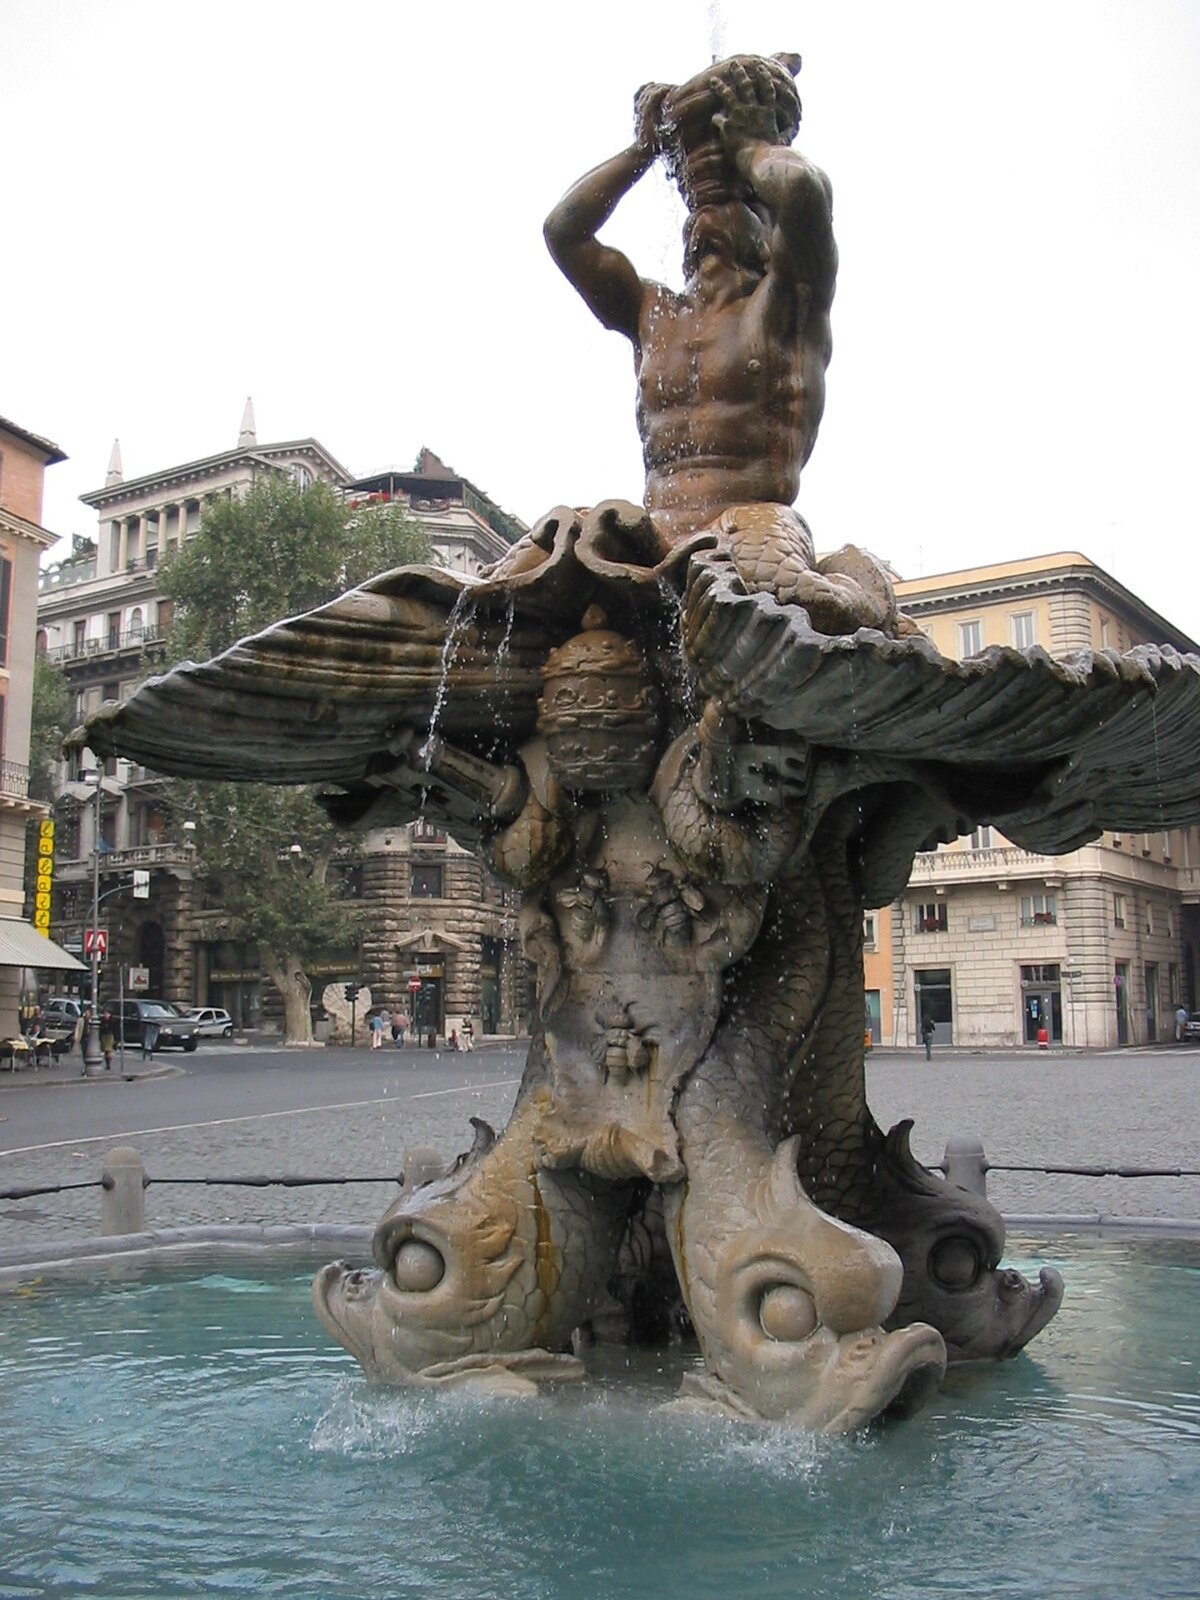 Ilustracja przedstawia zdjęcie czynnej fontanny Trytona w Rzymie. Rzeźba przedstawia bóstwo morskie, które trzyma róg, z którego wypływa woda. W podstawie fontanny znajdują się podobizny delfinów, które podtrzymują muszlę, na której umieszczona jest postać Trytona. Fontanna została wkomponowana w plac, wokół którego widać budynki.